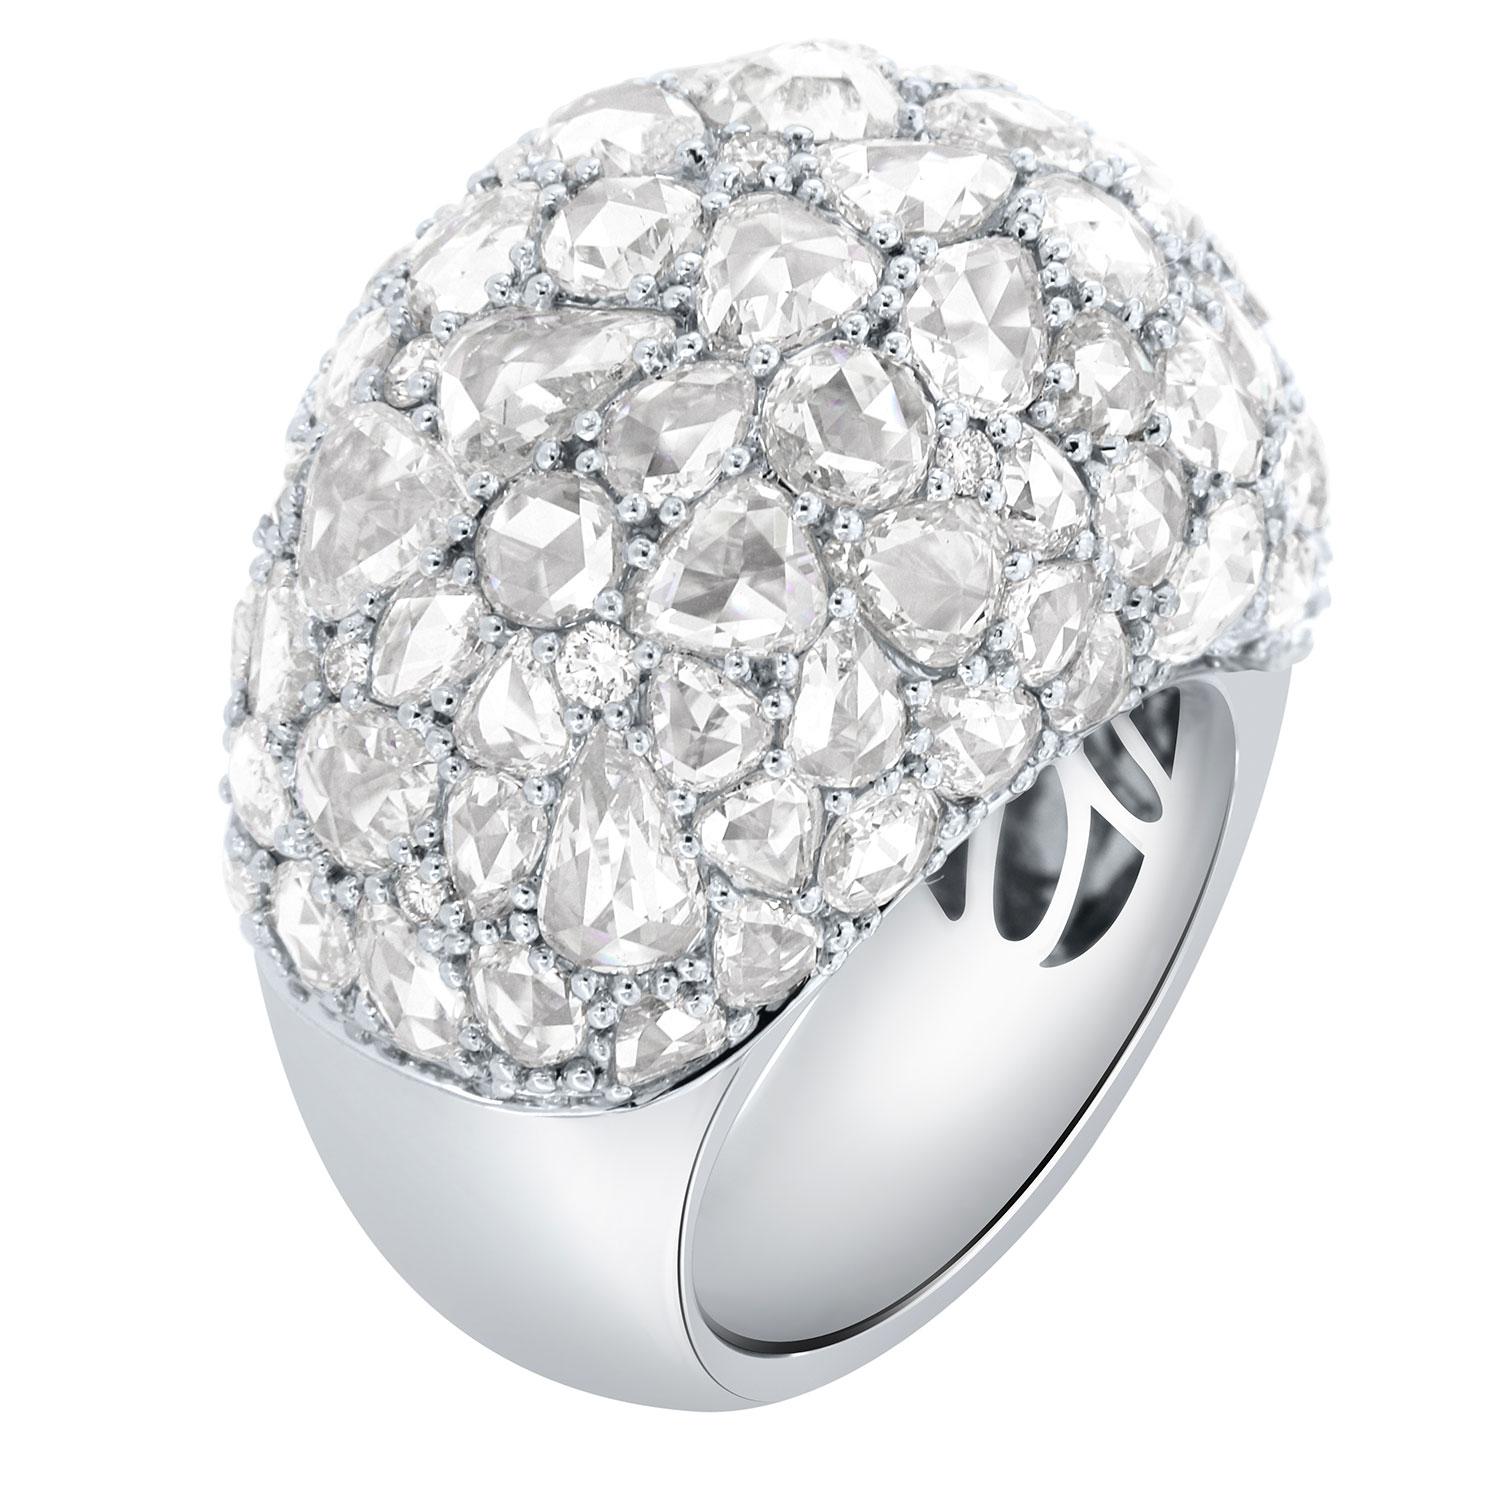 Dieser Ring zeigt eine gemischte Form von Diamanten im Rosenschliff, die mit gemeinsamen Zacken auf einer 15 mm breiten Ringkuppel gefasst sind. Die Höhe der Kuppel beträgt 15 mm.